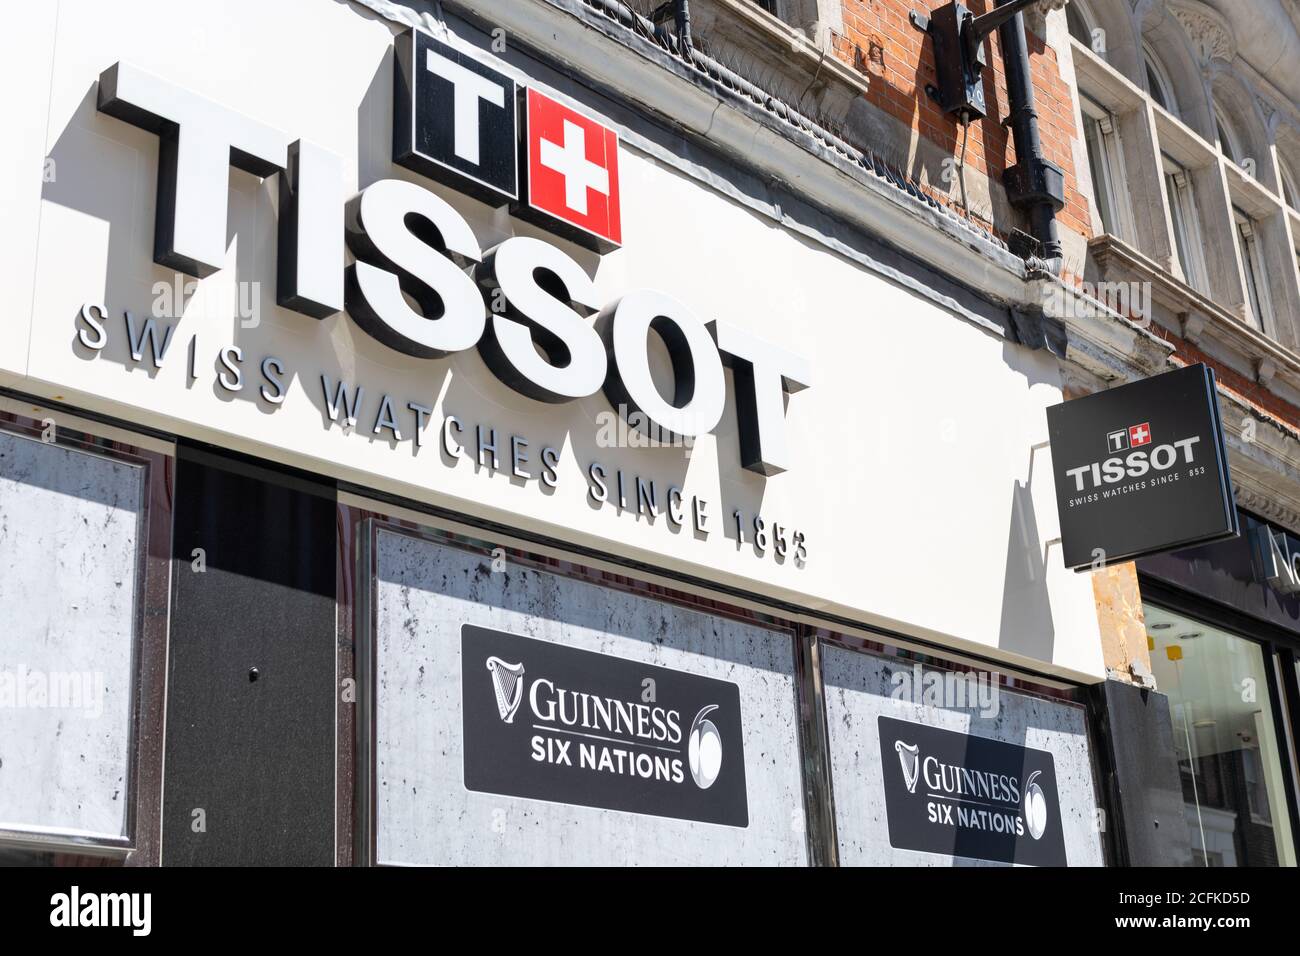 Das Einzelhandelsgeschäft von Tissot in der Londoner Oxford Street, einem bekannten Schweizer Uhrenhersteller und einer bekannten Marke. Stockfoto